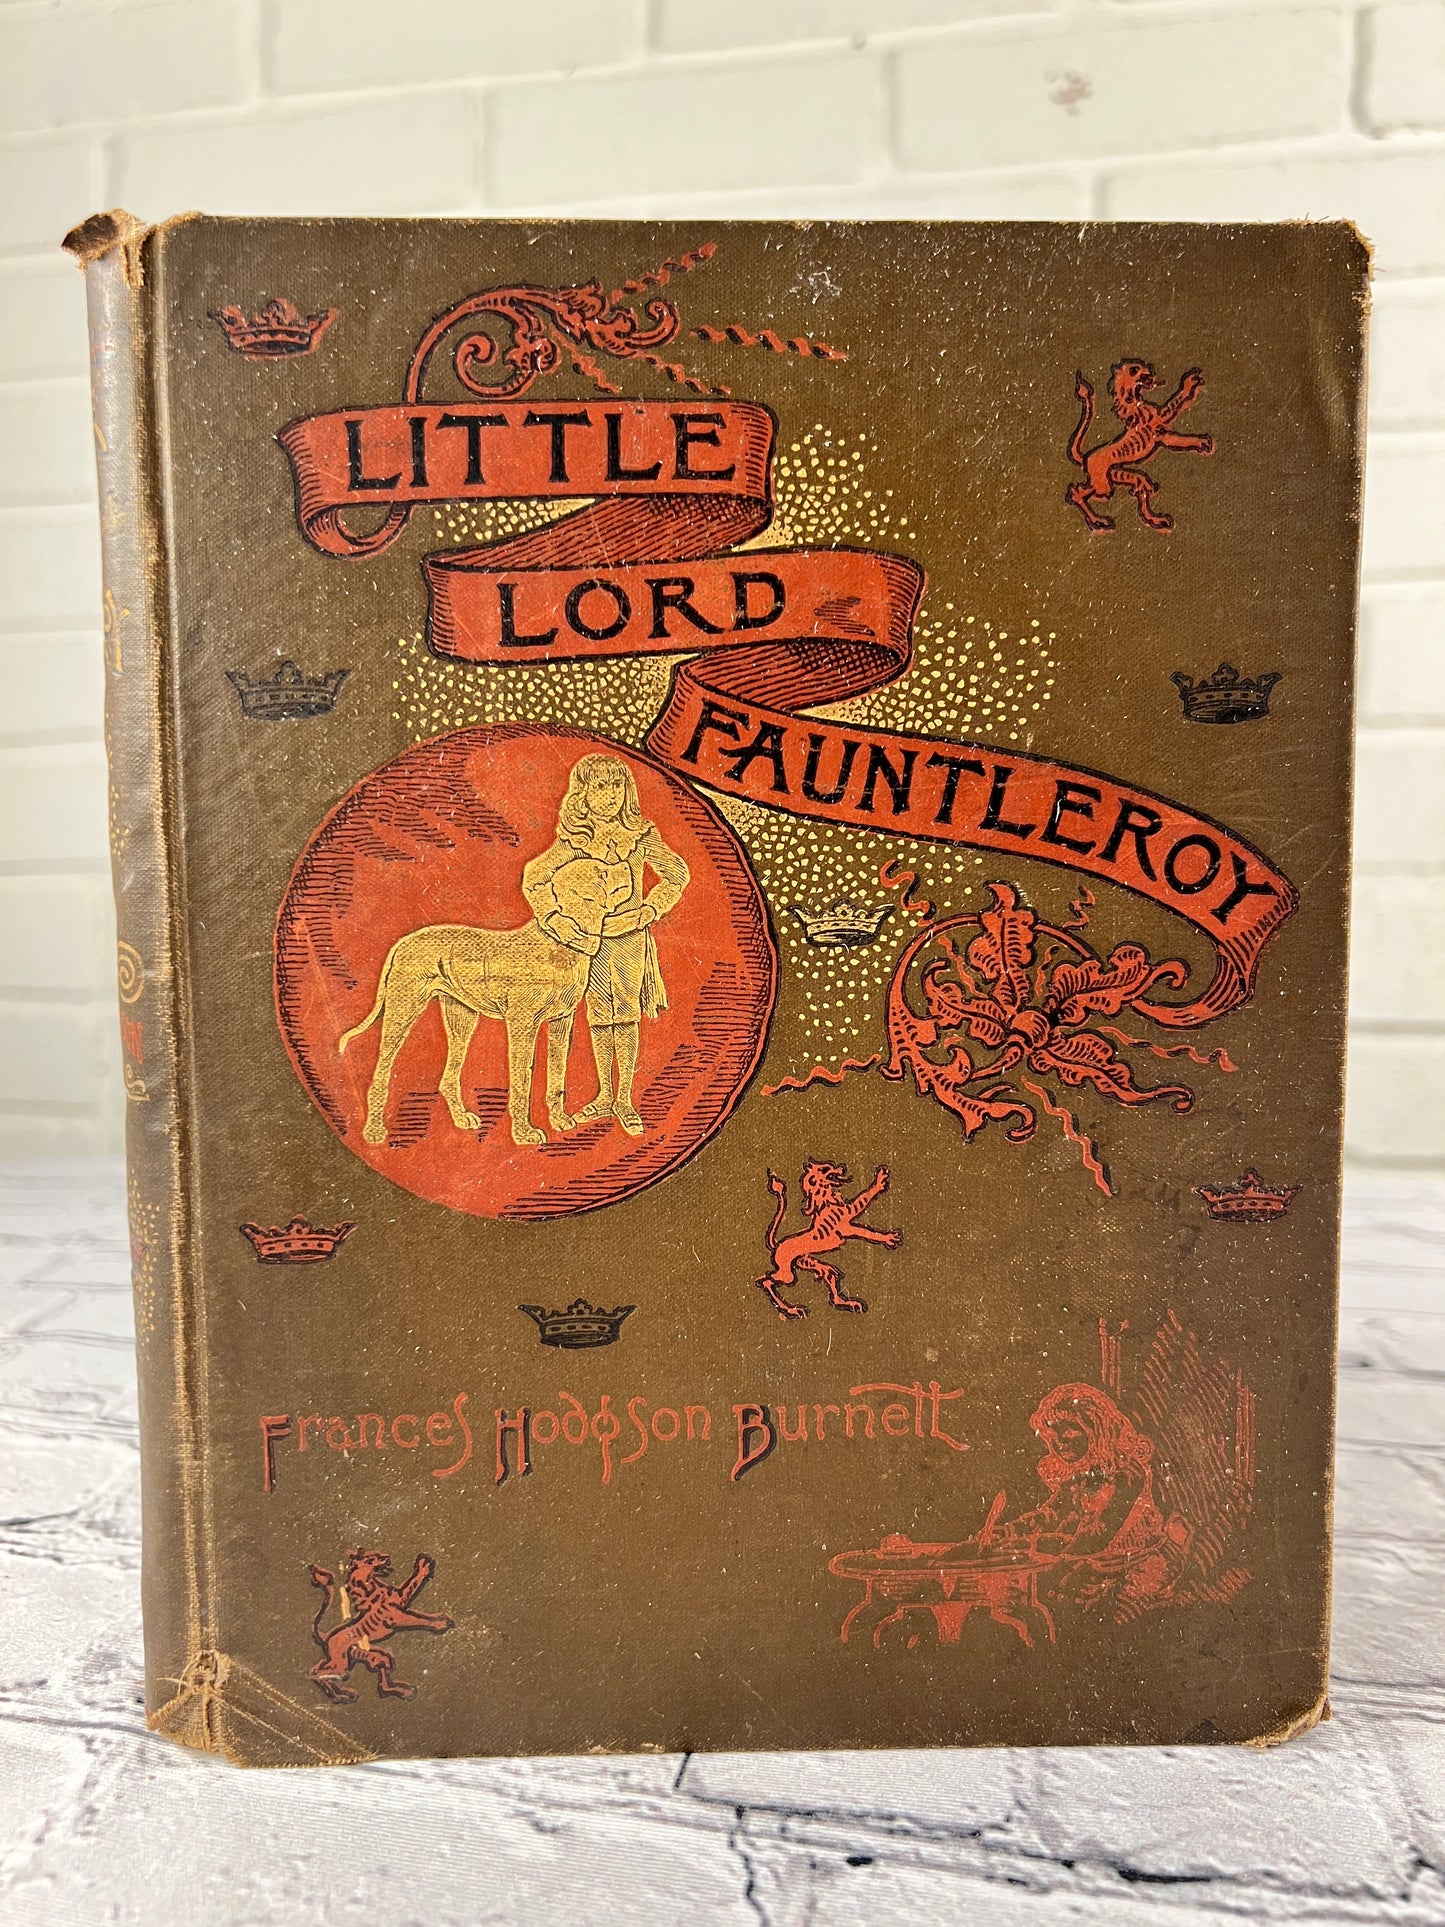 Little Lord Fantleroy by Frances Hodgson Burnett [1887]